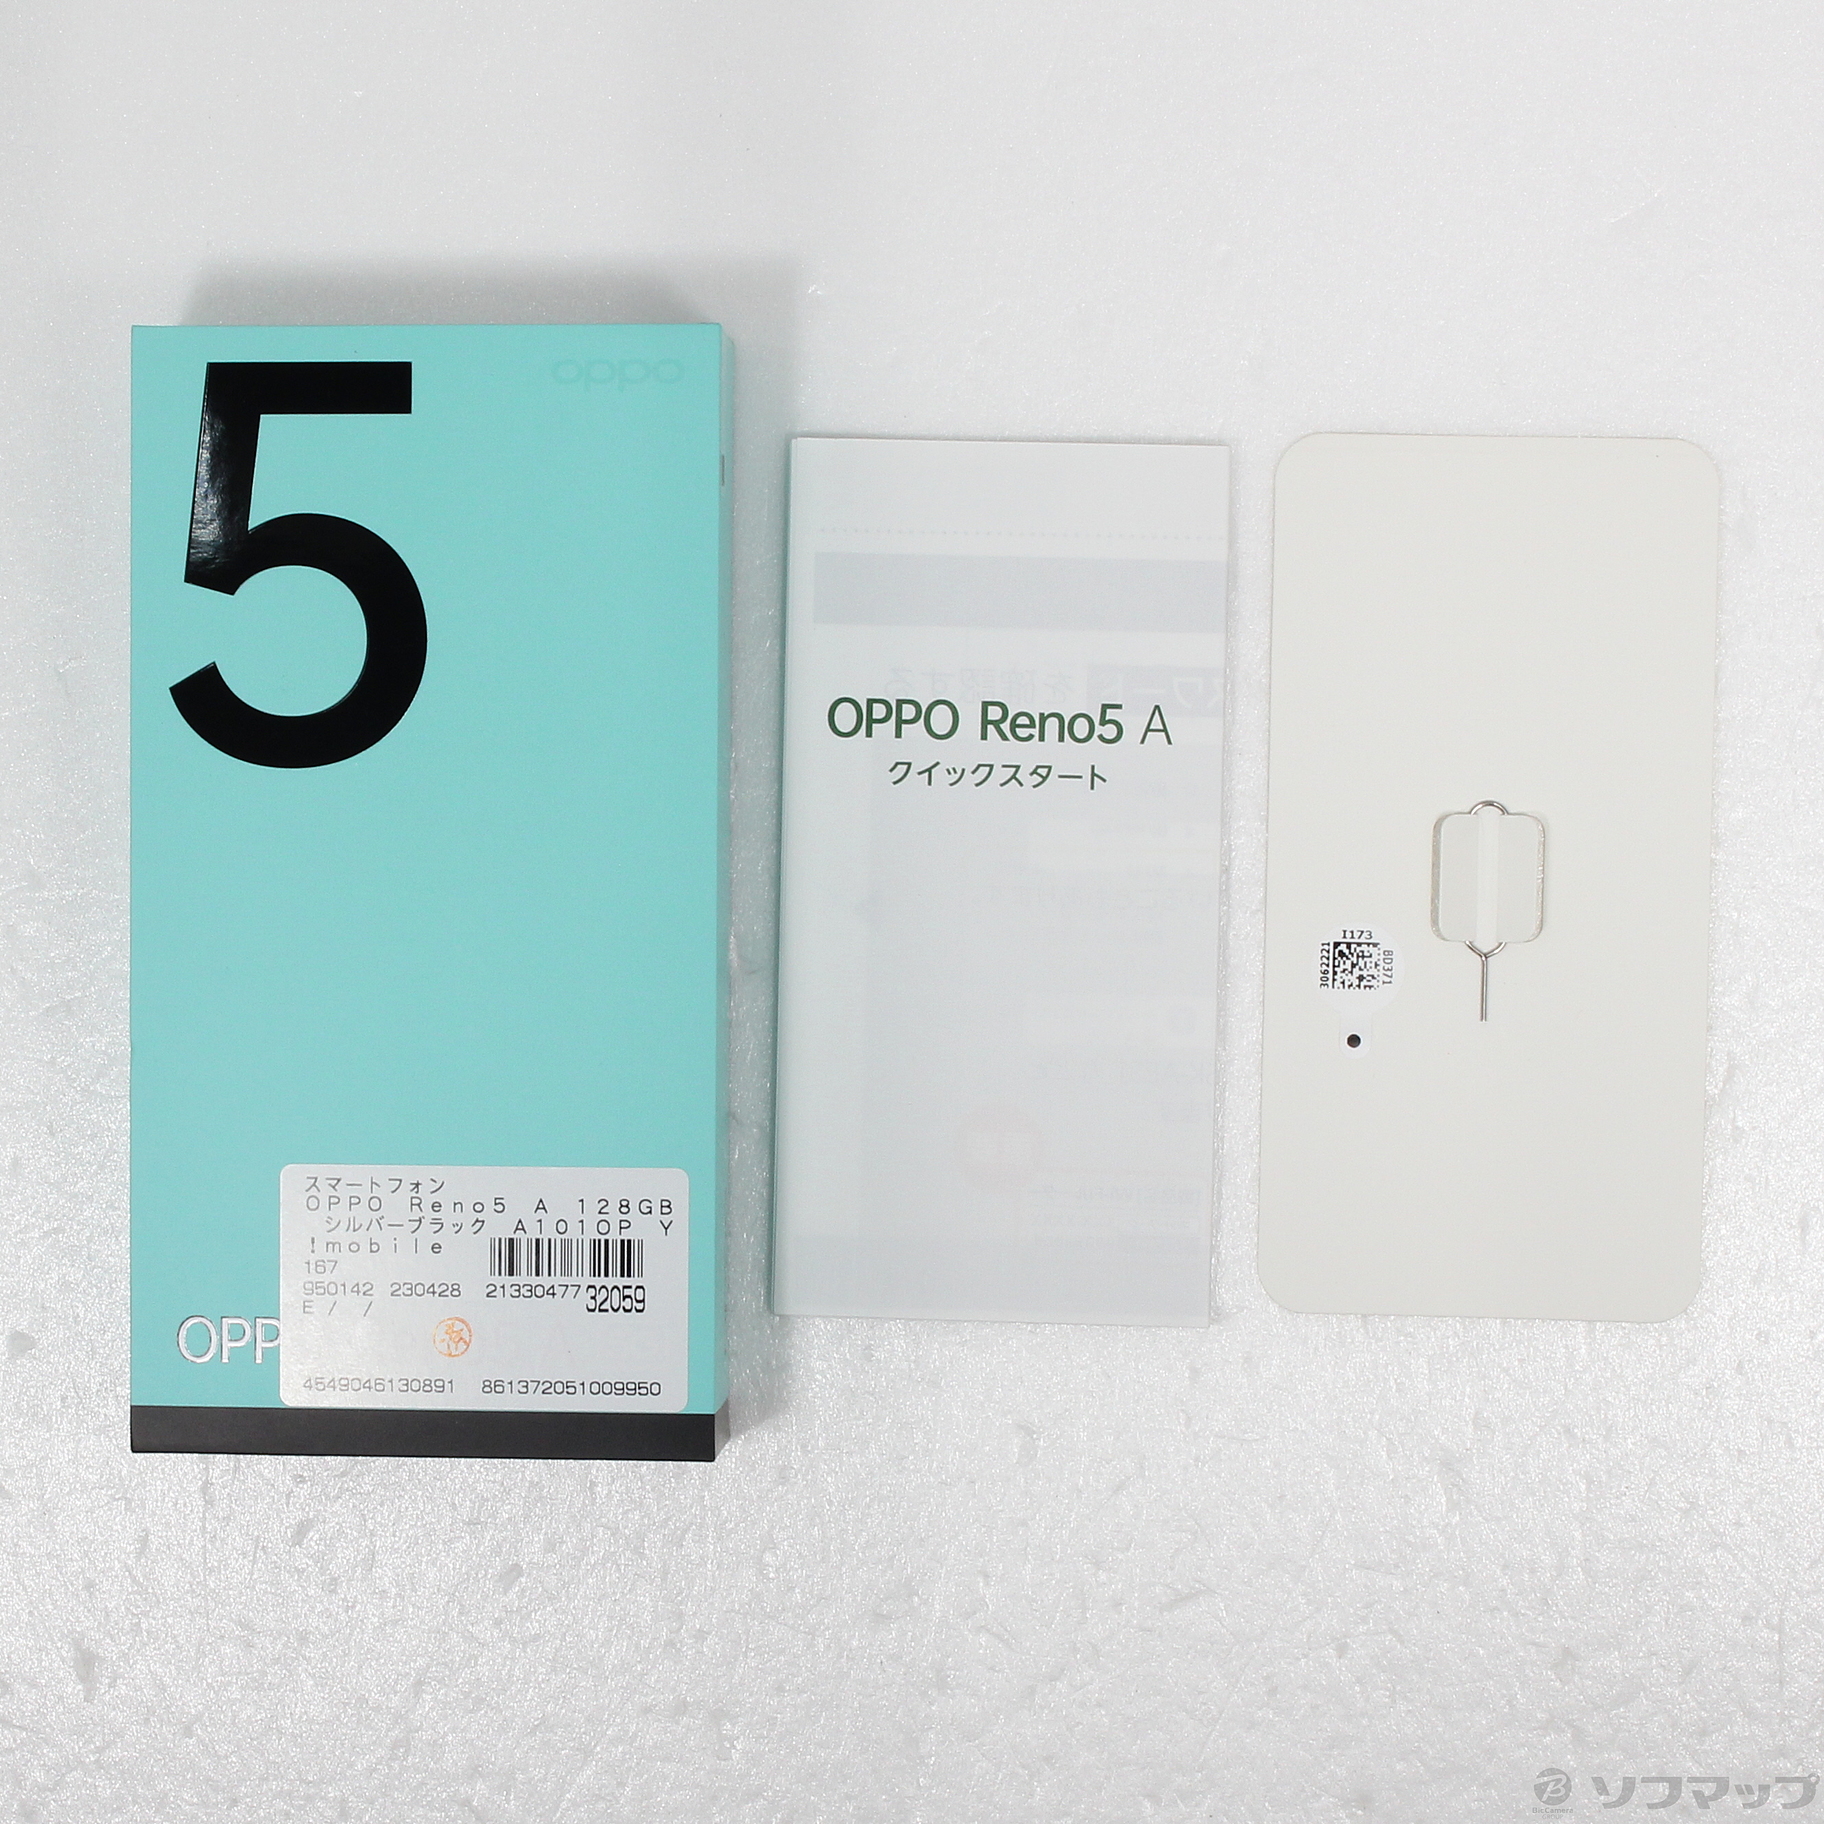 中古】OPPO Reno5 A 128GB シルバーブラック A101OP Y!mobile